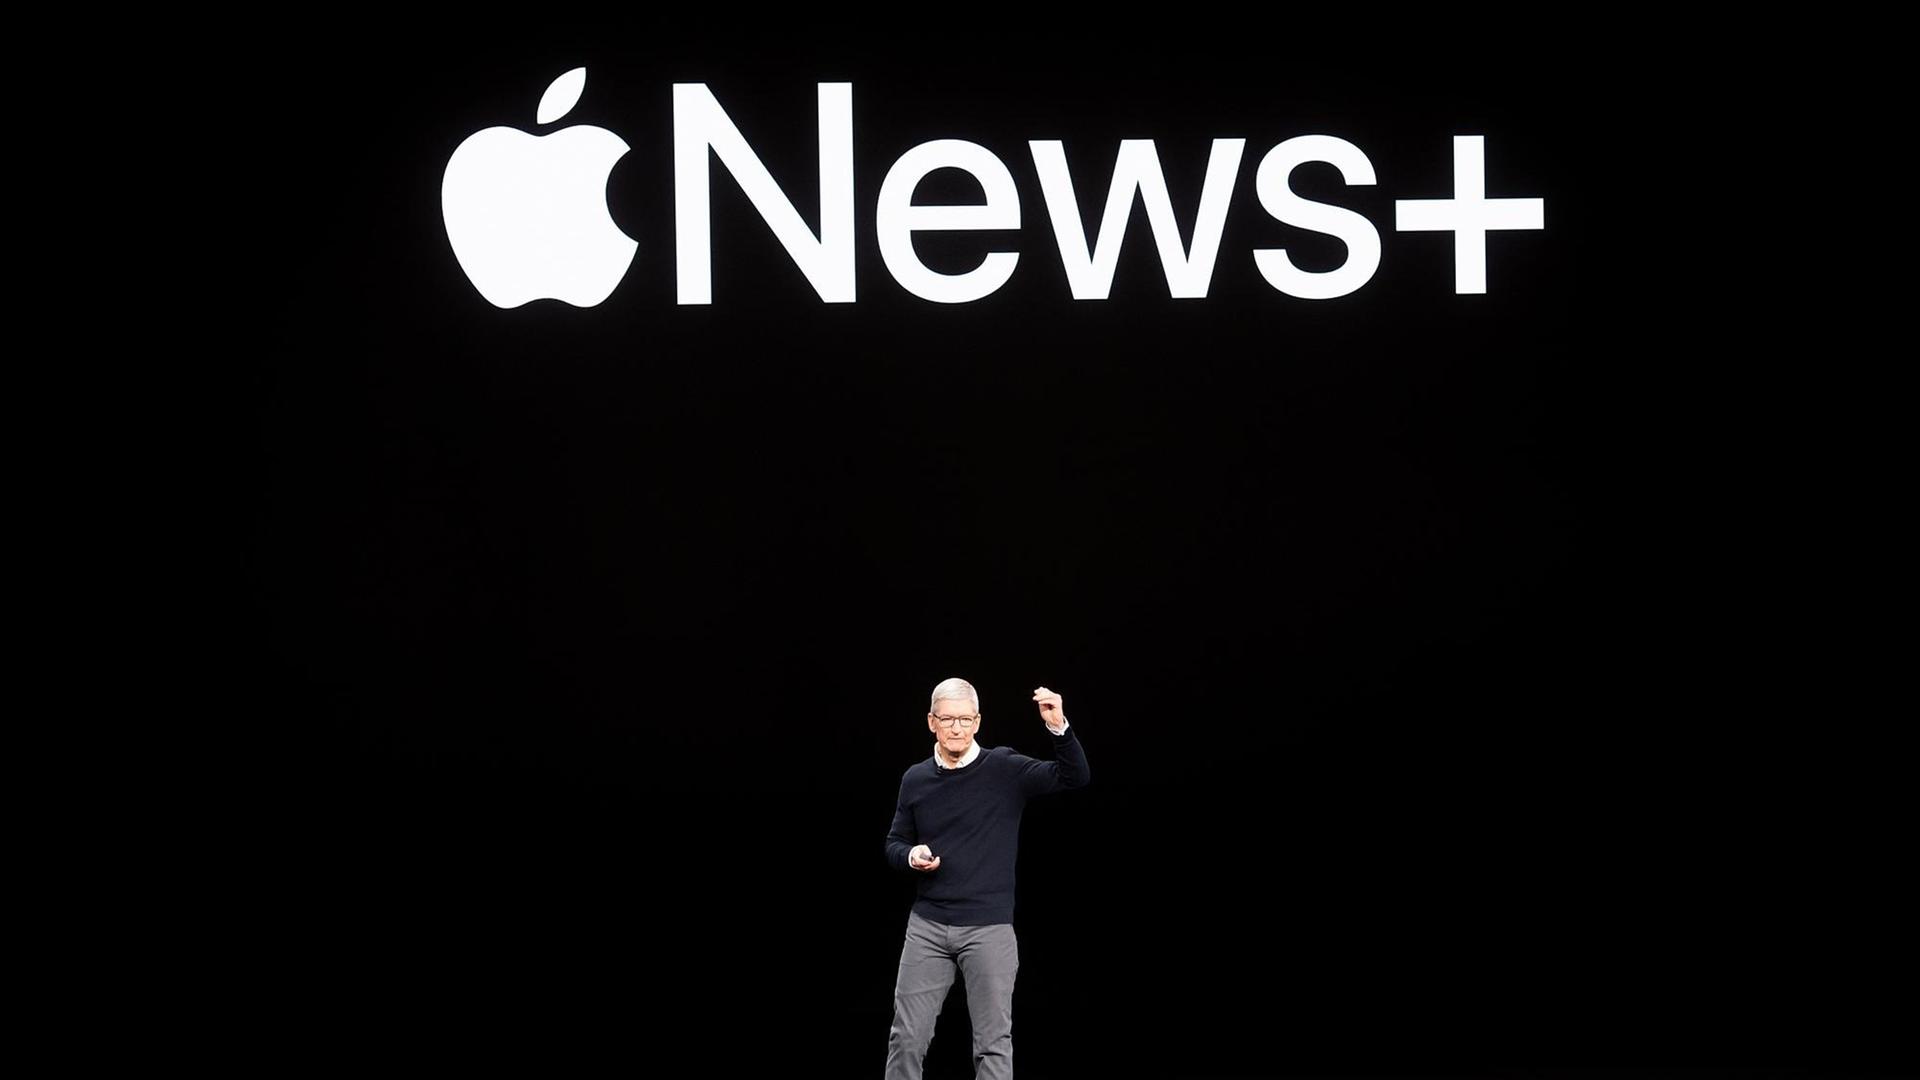 Der Chef des Technologieunternehmens Apple, Tim Cook, steht auf der Bühne. Auf der schwarzen Wand hinter ihm ist das Logo von Apple News Plus zu sehen.